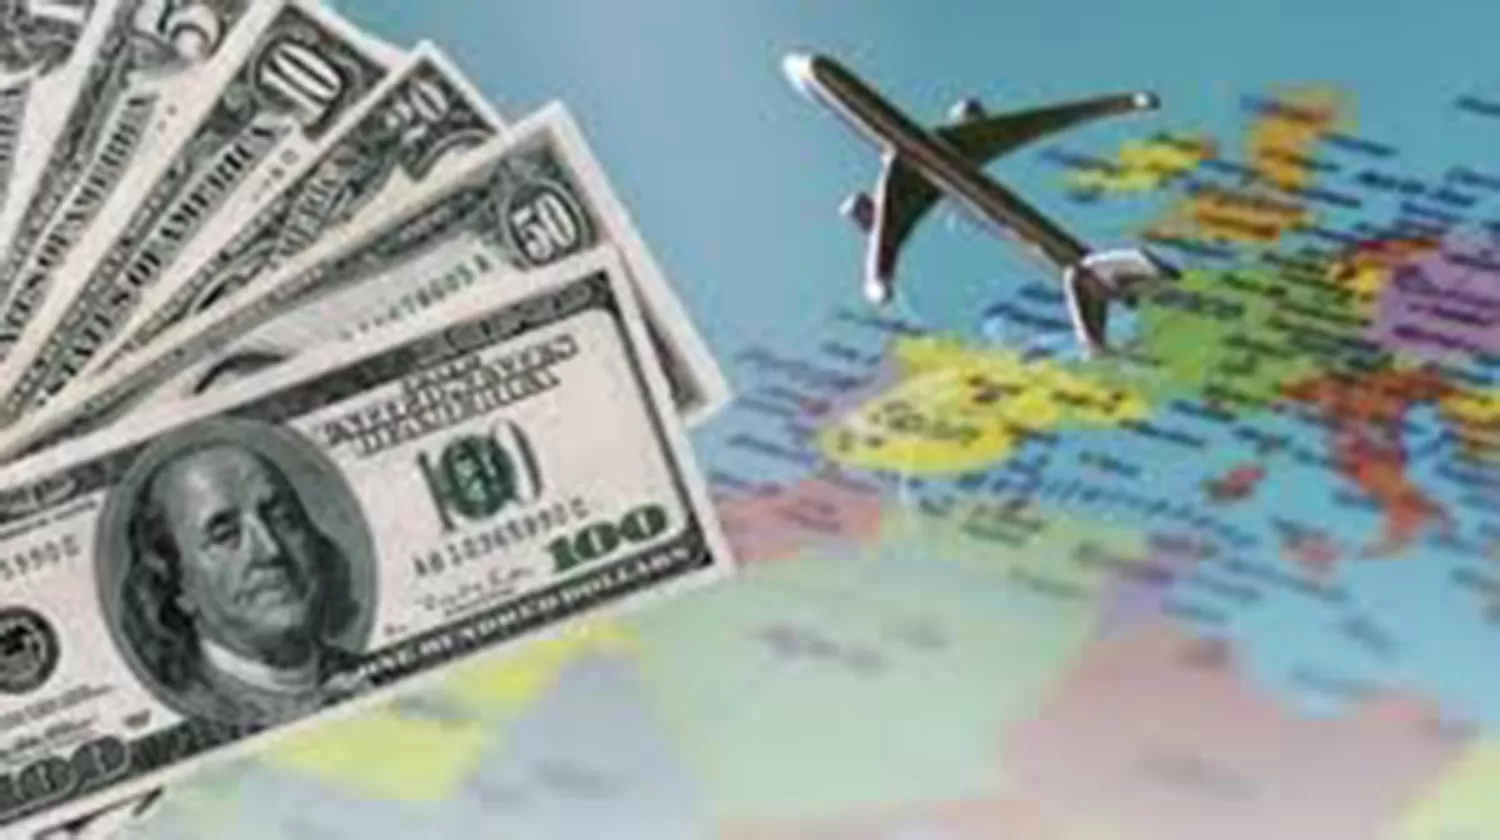 Calculadora interactiva: calculá cuánto vas a pagar con el dólar turista o ahorro